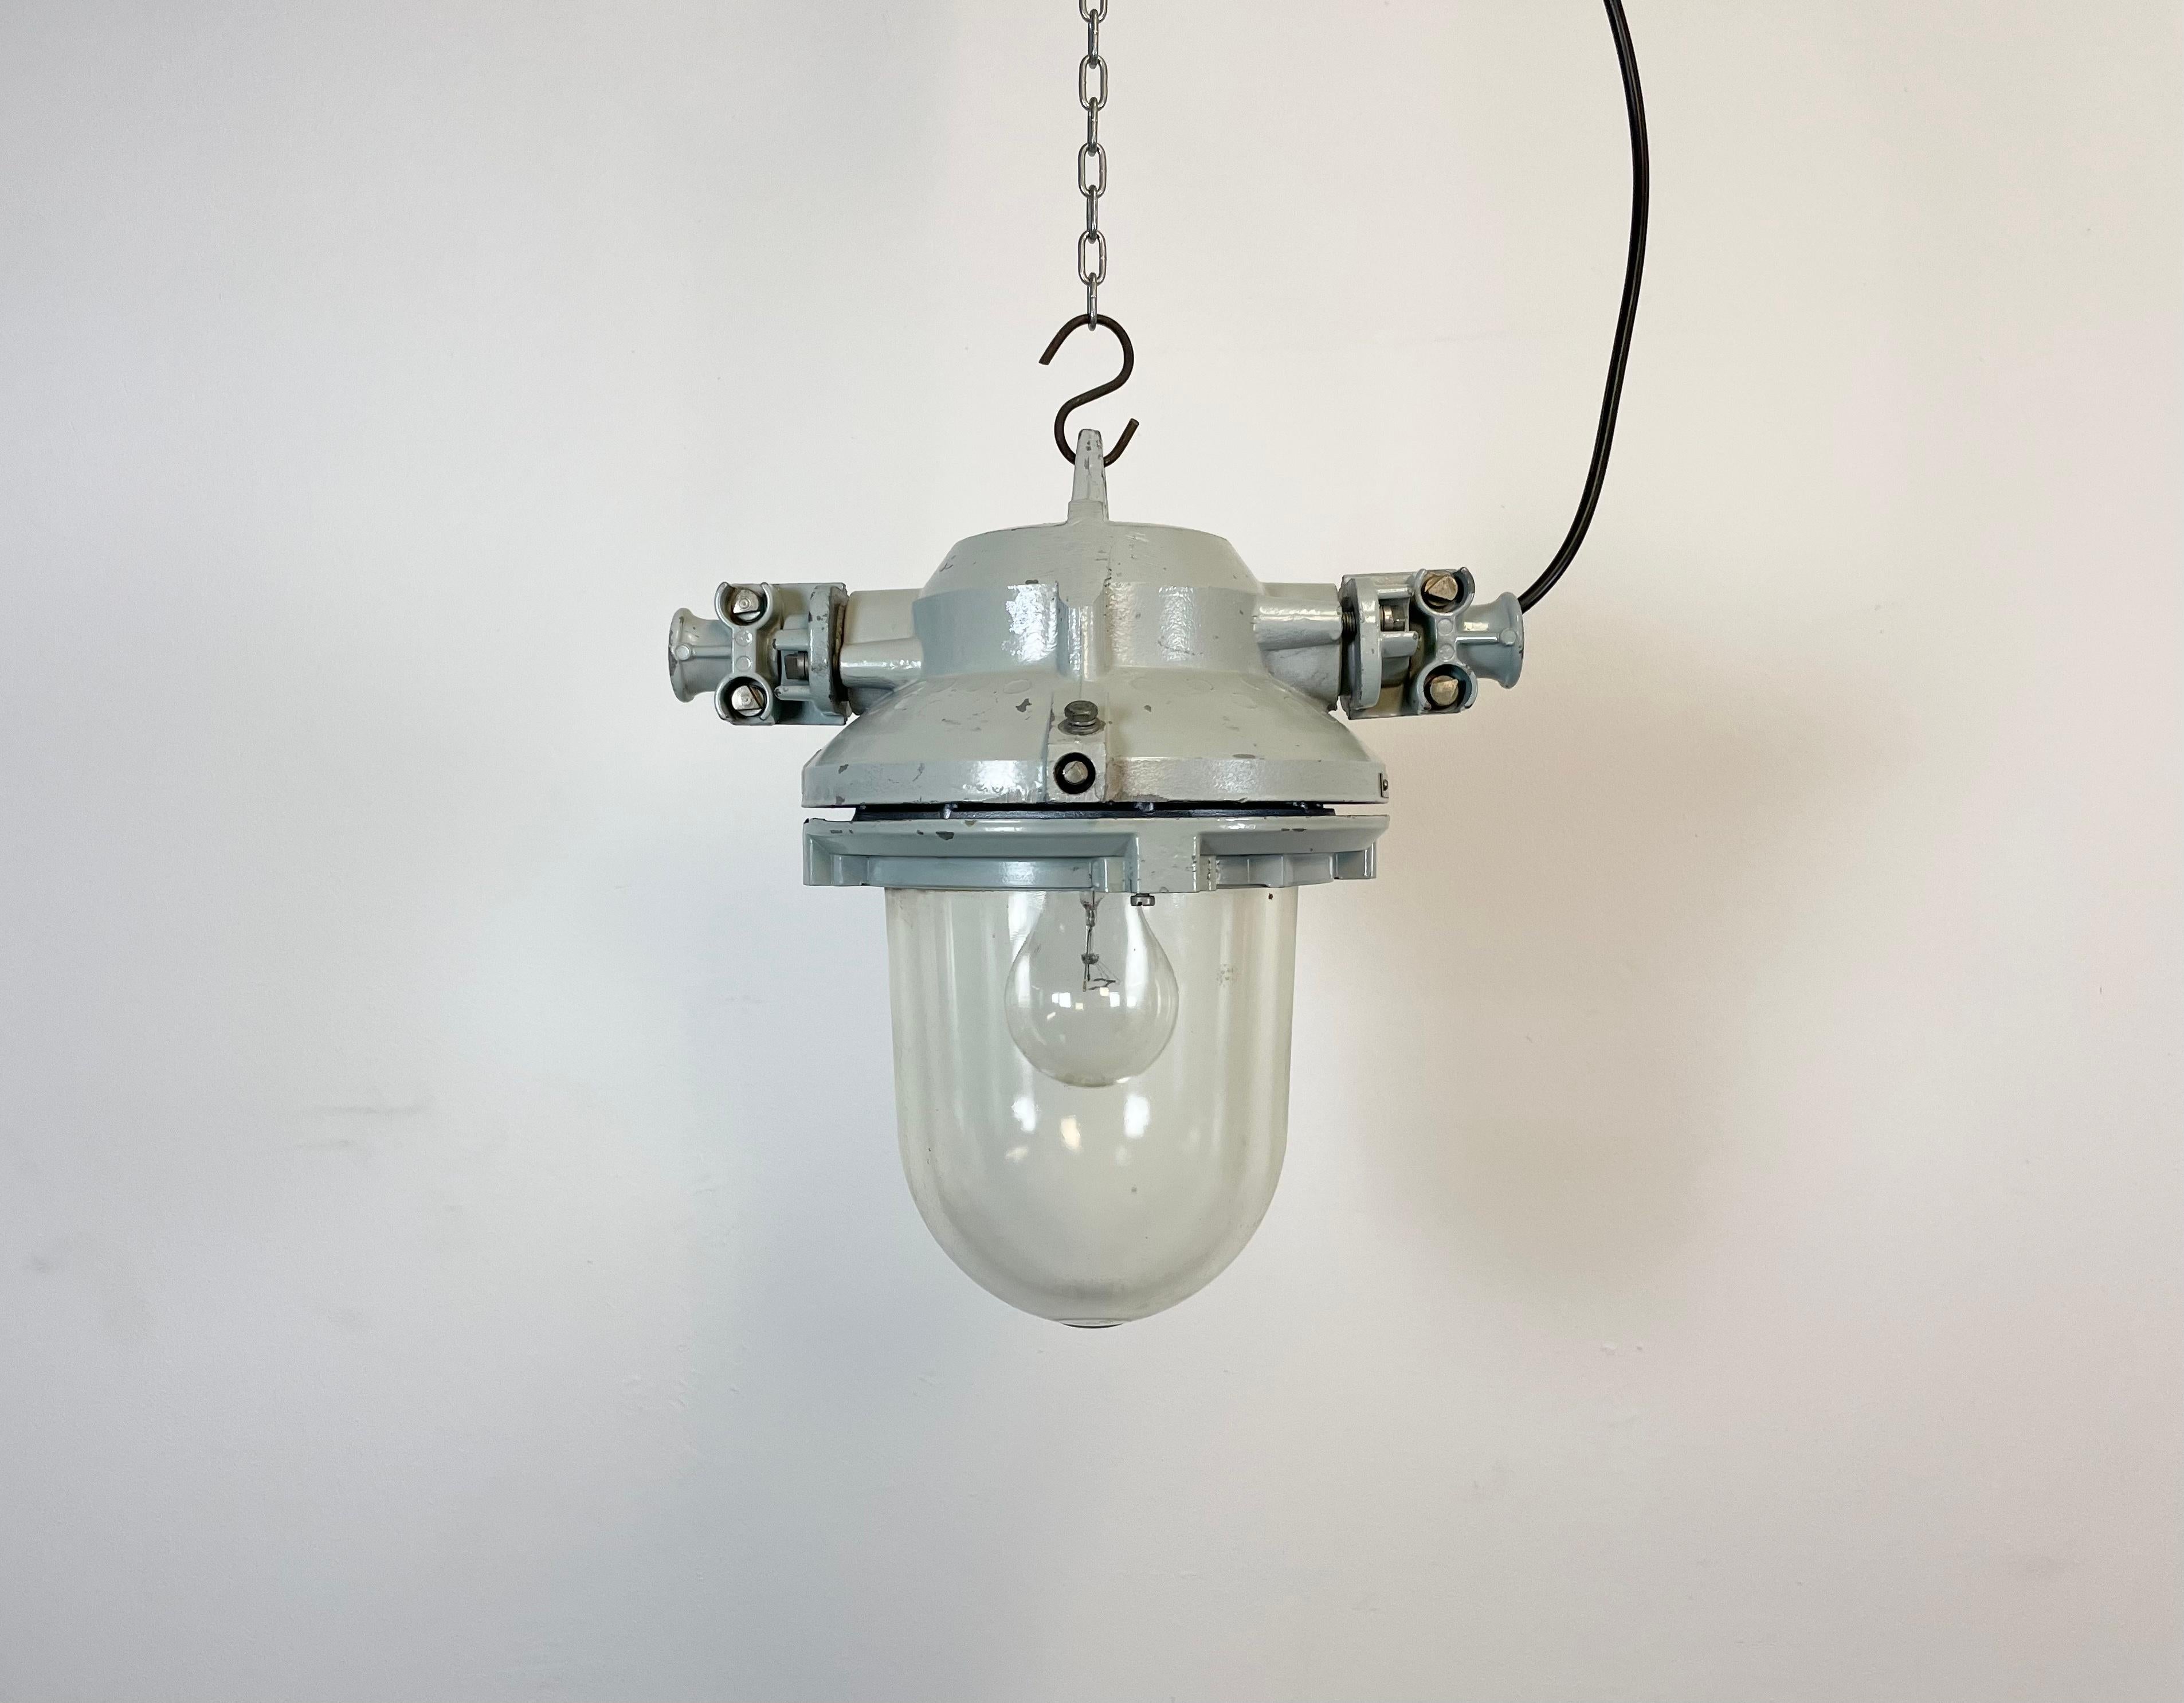 Lampe industrielle grise avec ampoule massive en verre de protection. Fabriqué en ex-Tchécoslovaquie par Elektrosvit dans les années 1970. Il présente un corps en aluminium moulé et un verre transparent. La douille en porcelaine nécessite des